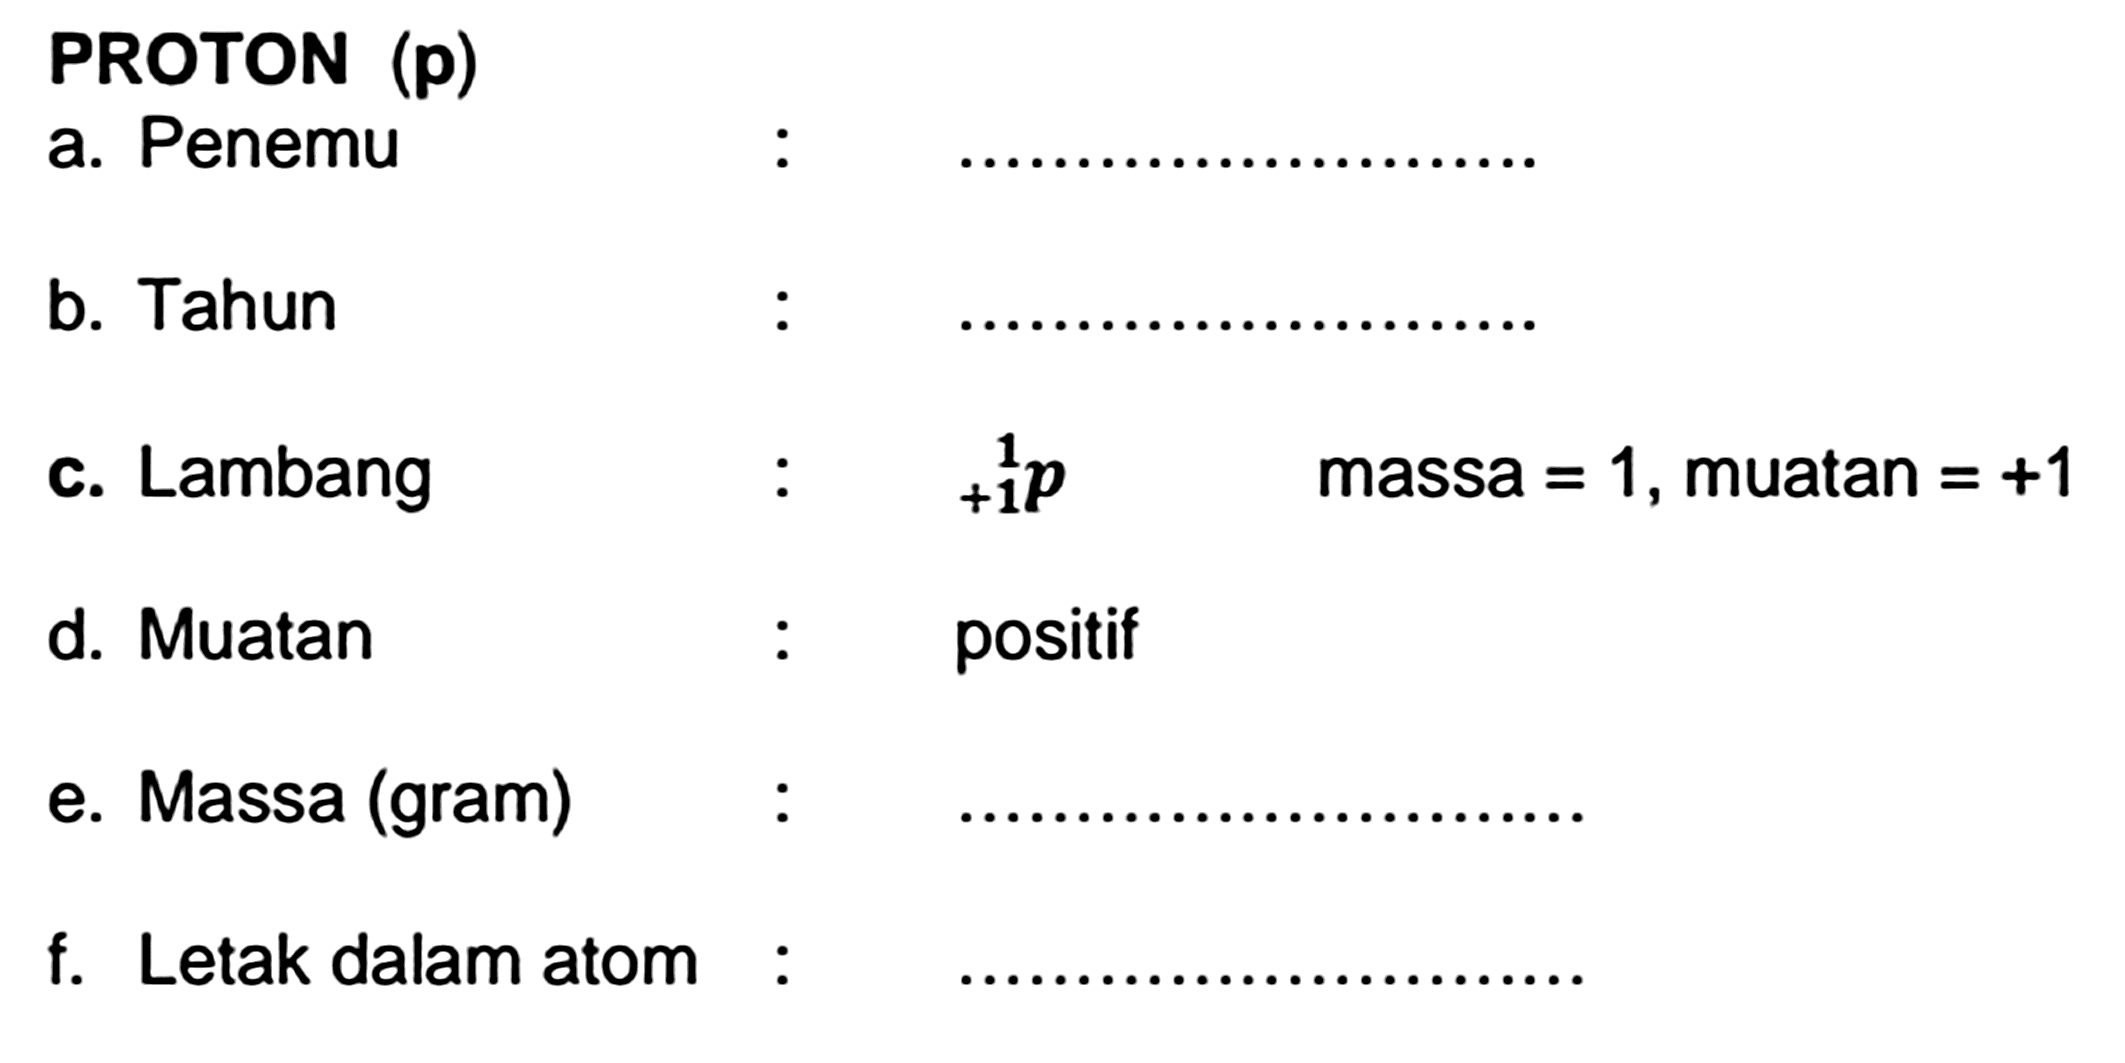 PROTON (p)
a. Penemu
b. Tahun
c. Lambang  : { )_(+1)^(1) p   massa  =1 , muatan  =+1 
d. Muatan : positif
e. Massa (gram) :
f. Letak dalam atom :